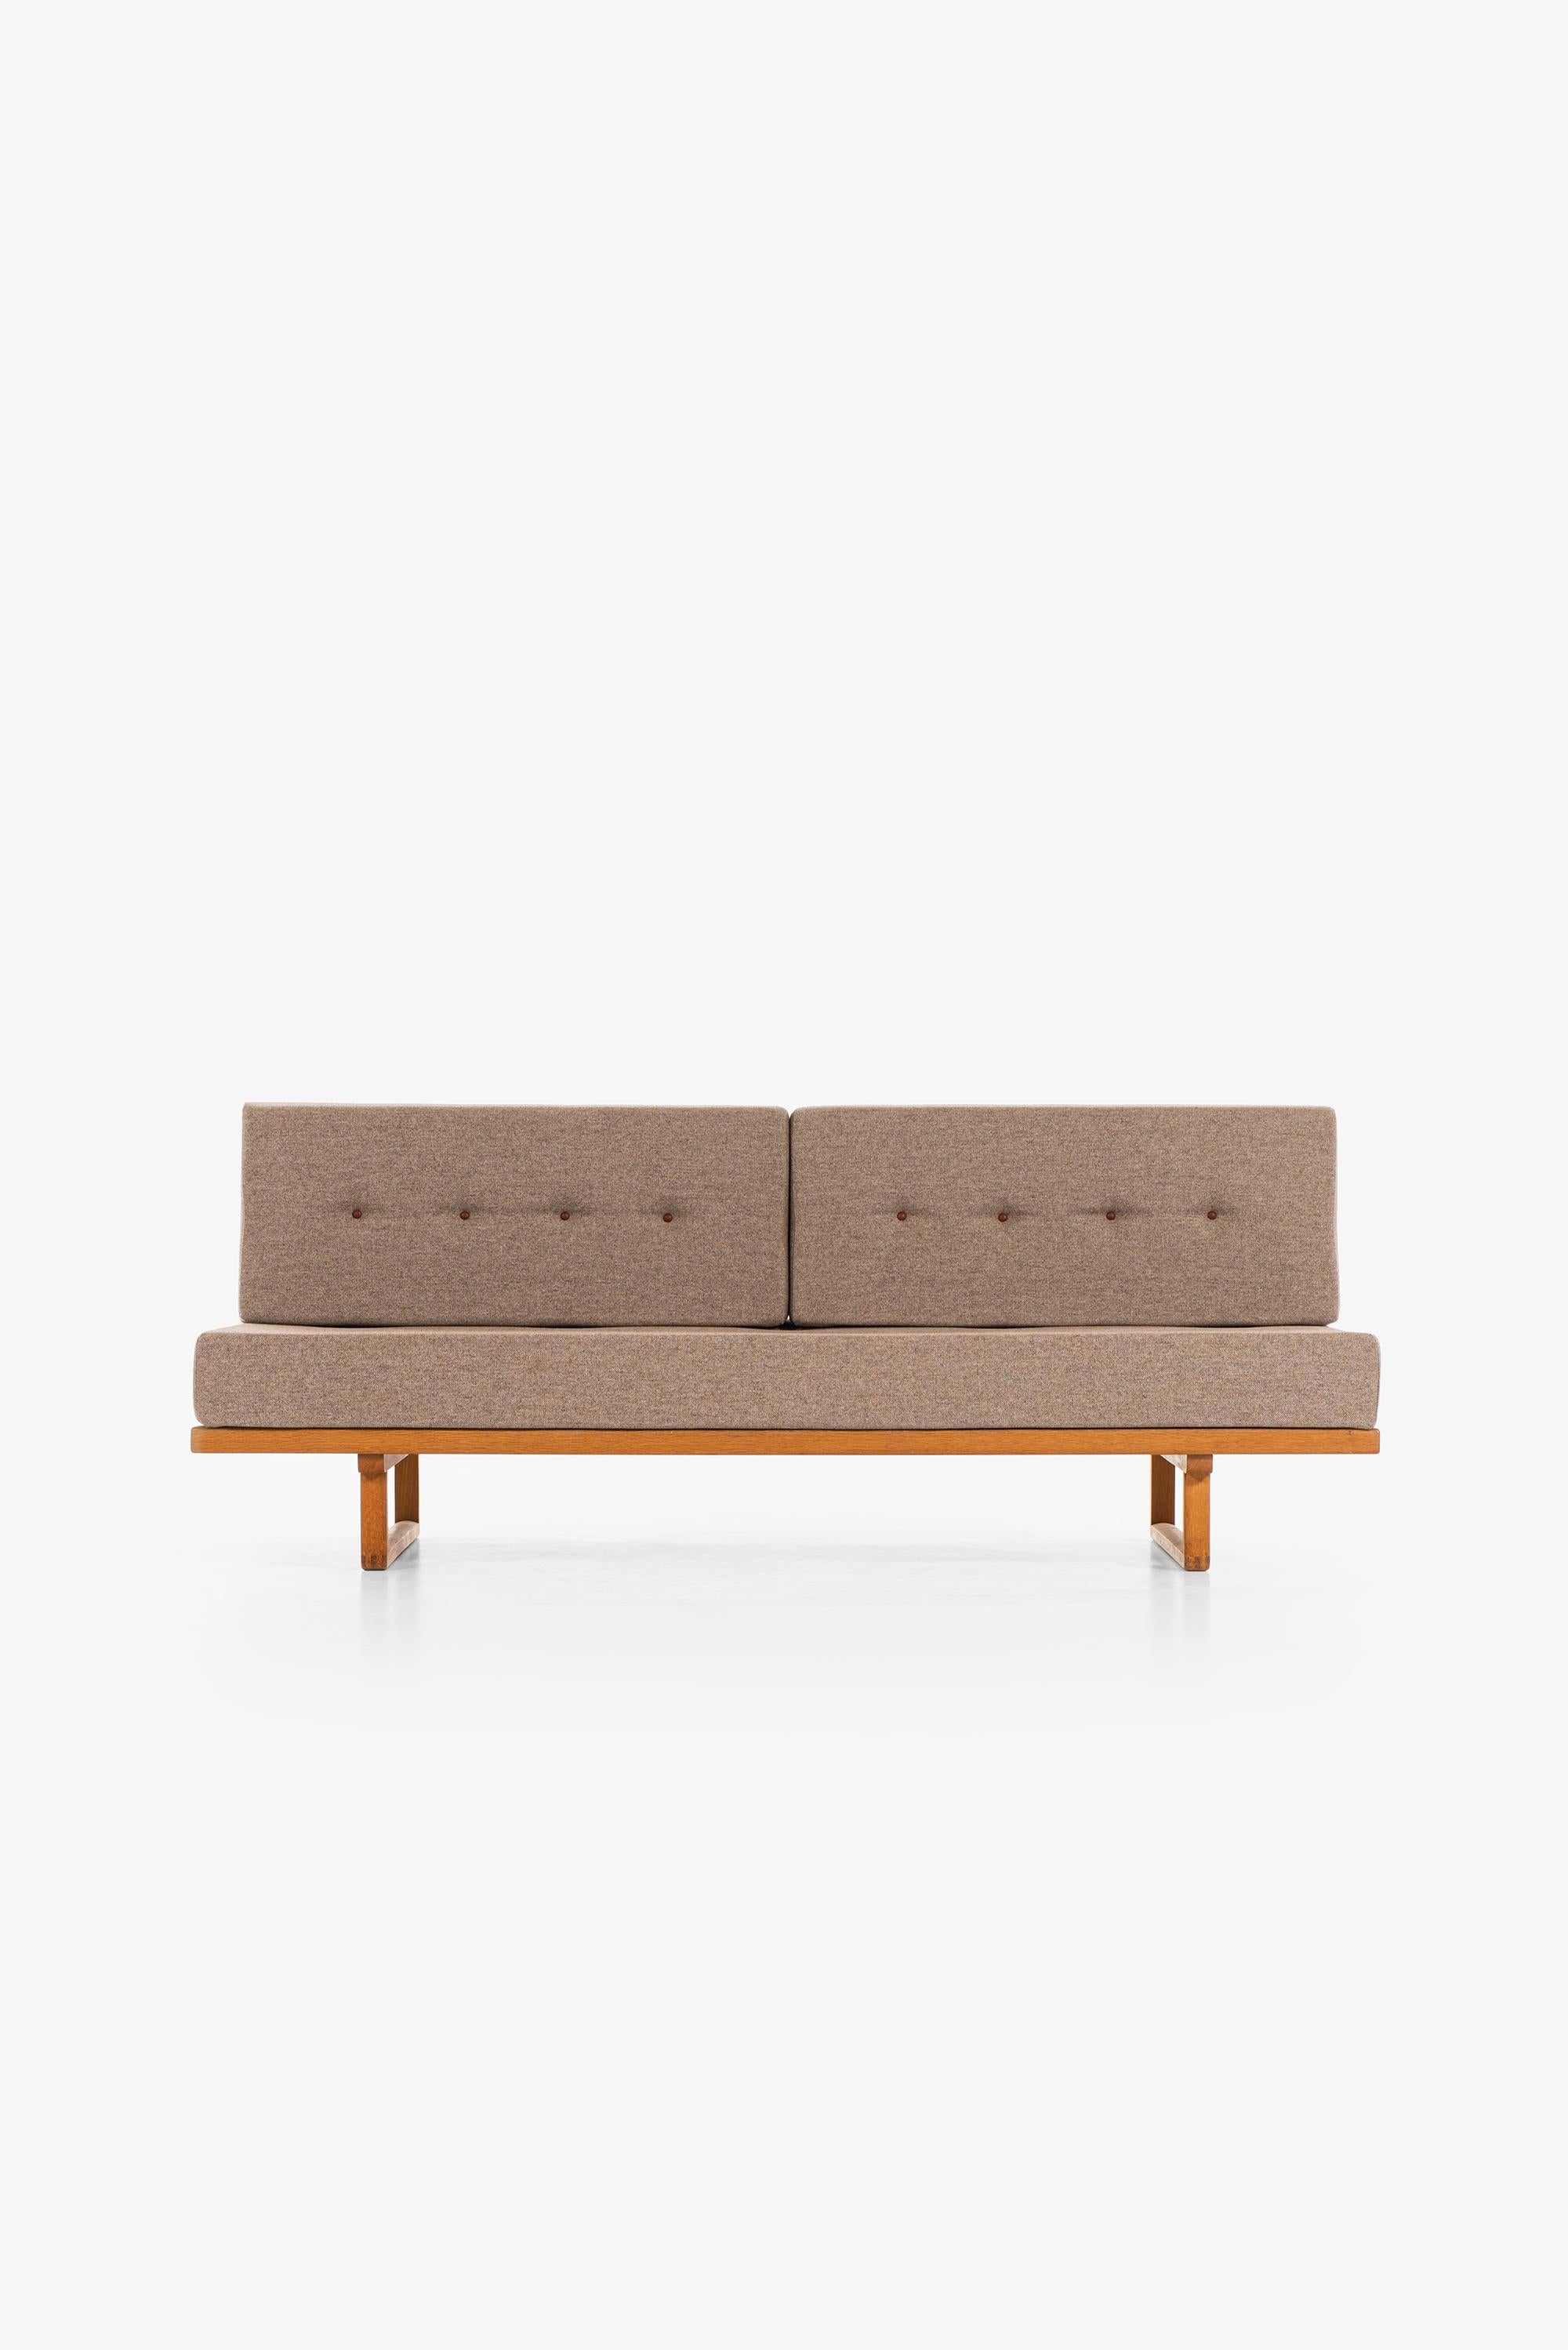 Seltenes Sofa/Tagesbett Modell 4311/4312 entworfen von Børge Mogensen. Hergestellt von der Fredericia Stolenfabrik in Dänemark.